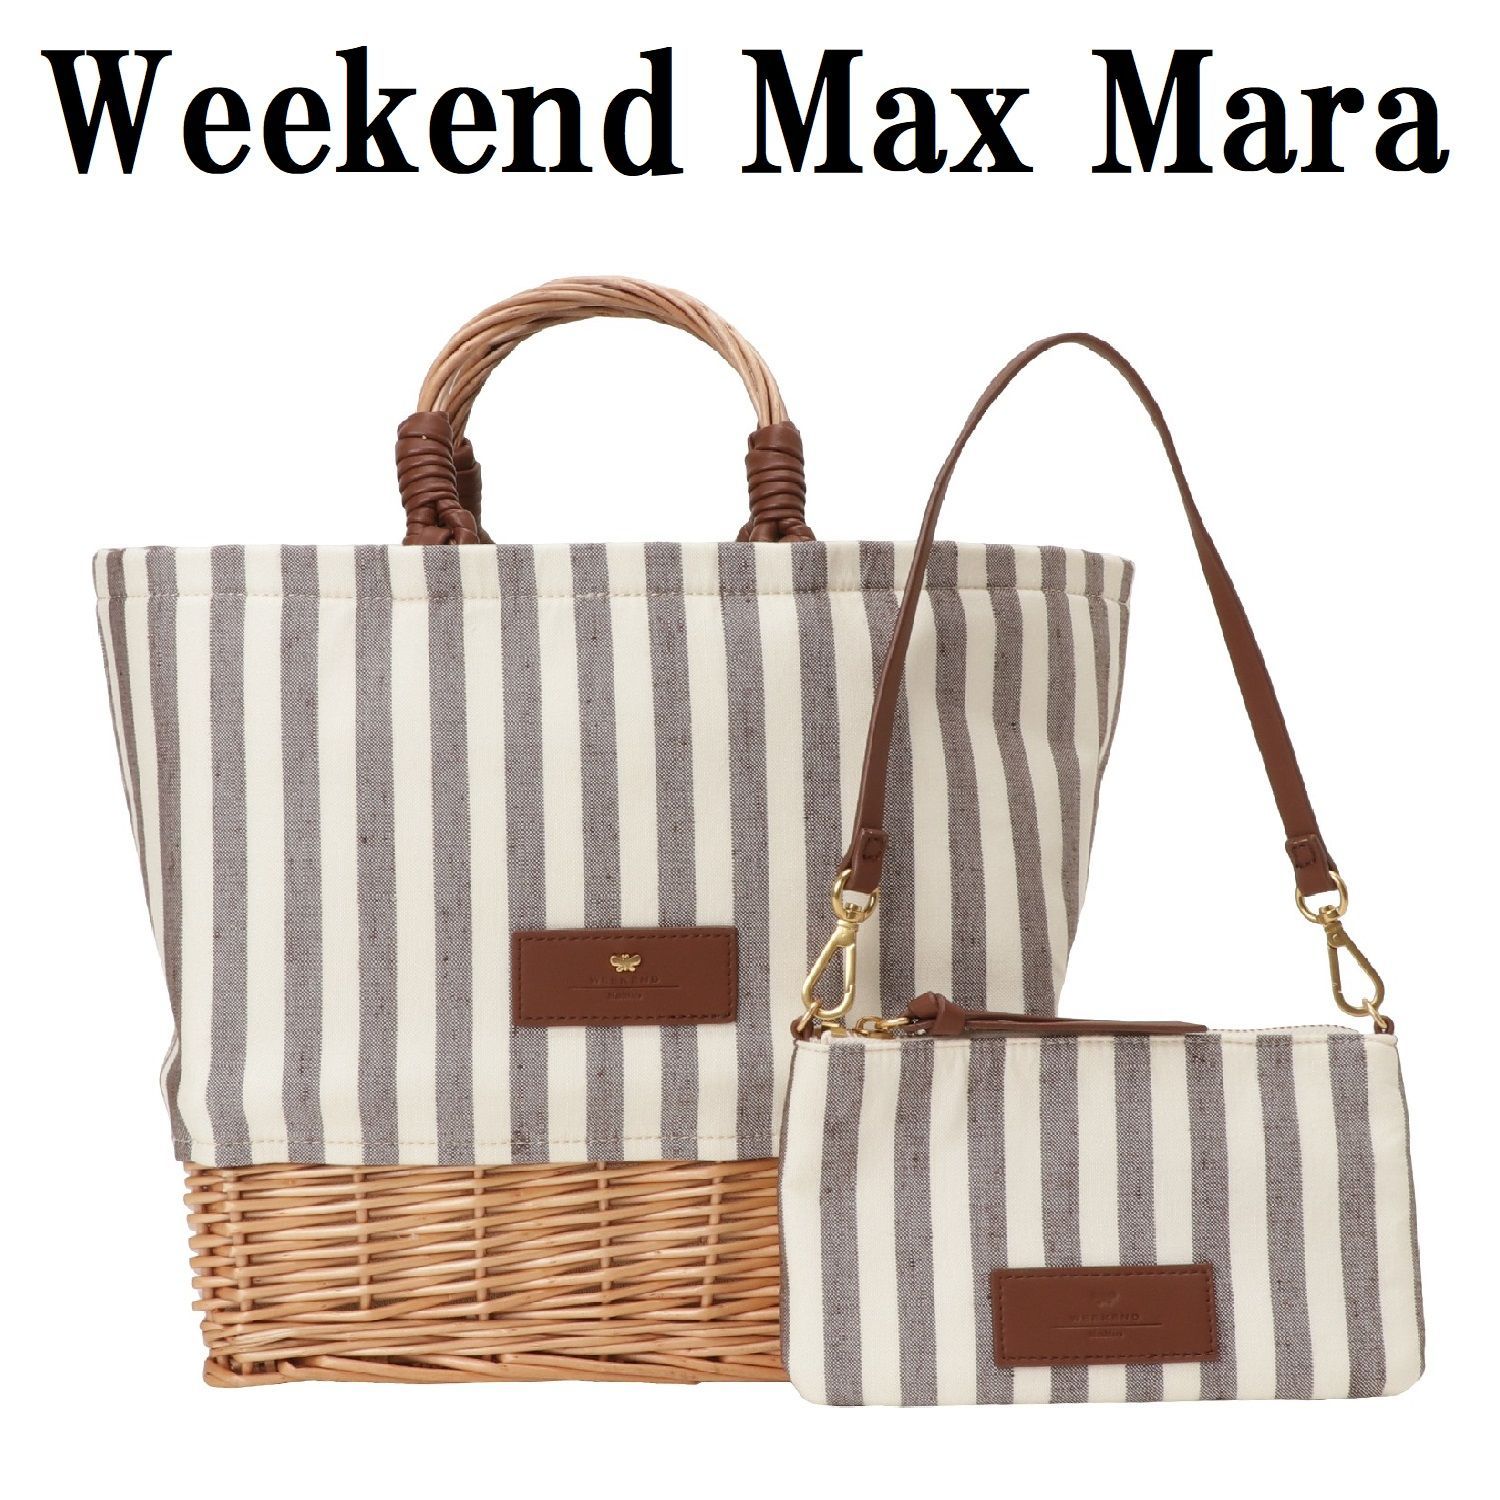 Weekend Max Mara ウィークエンド マックスマーラ 2355111634600 001